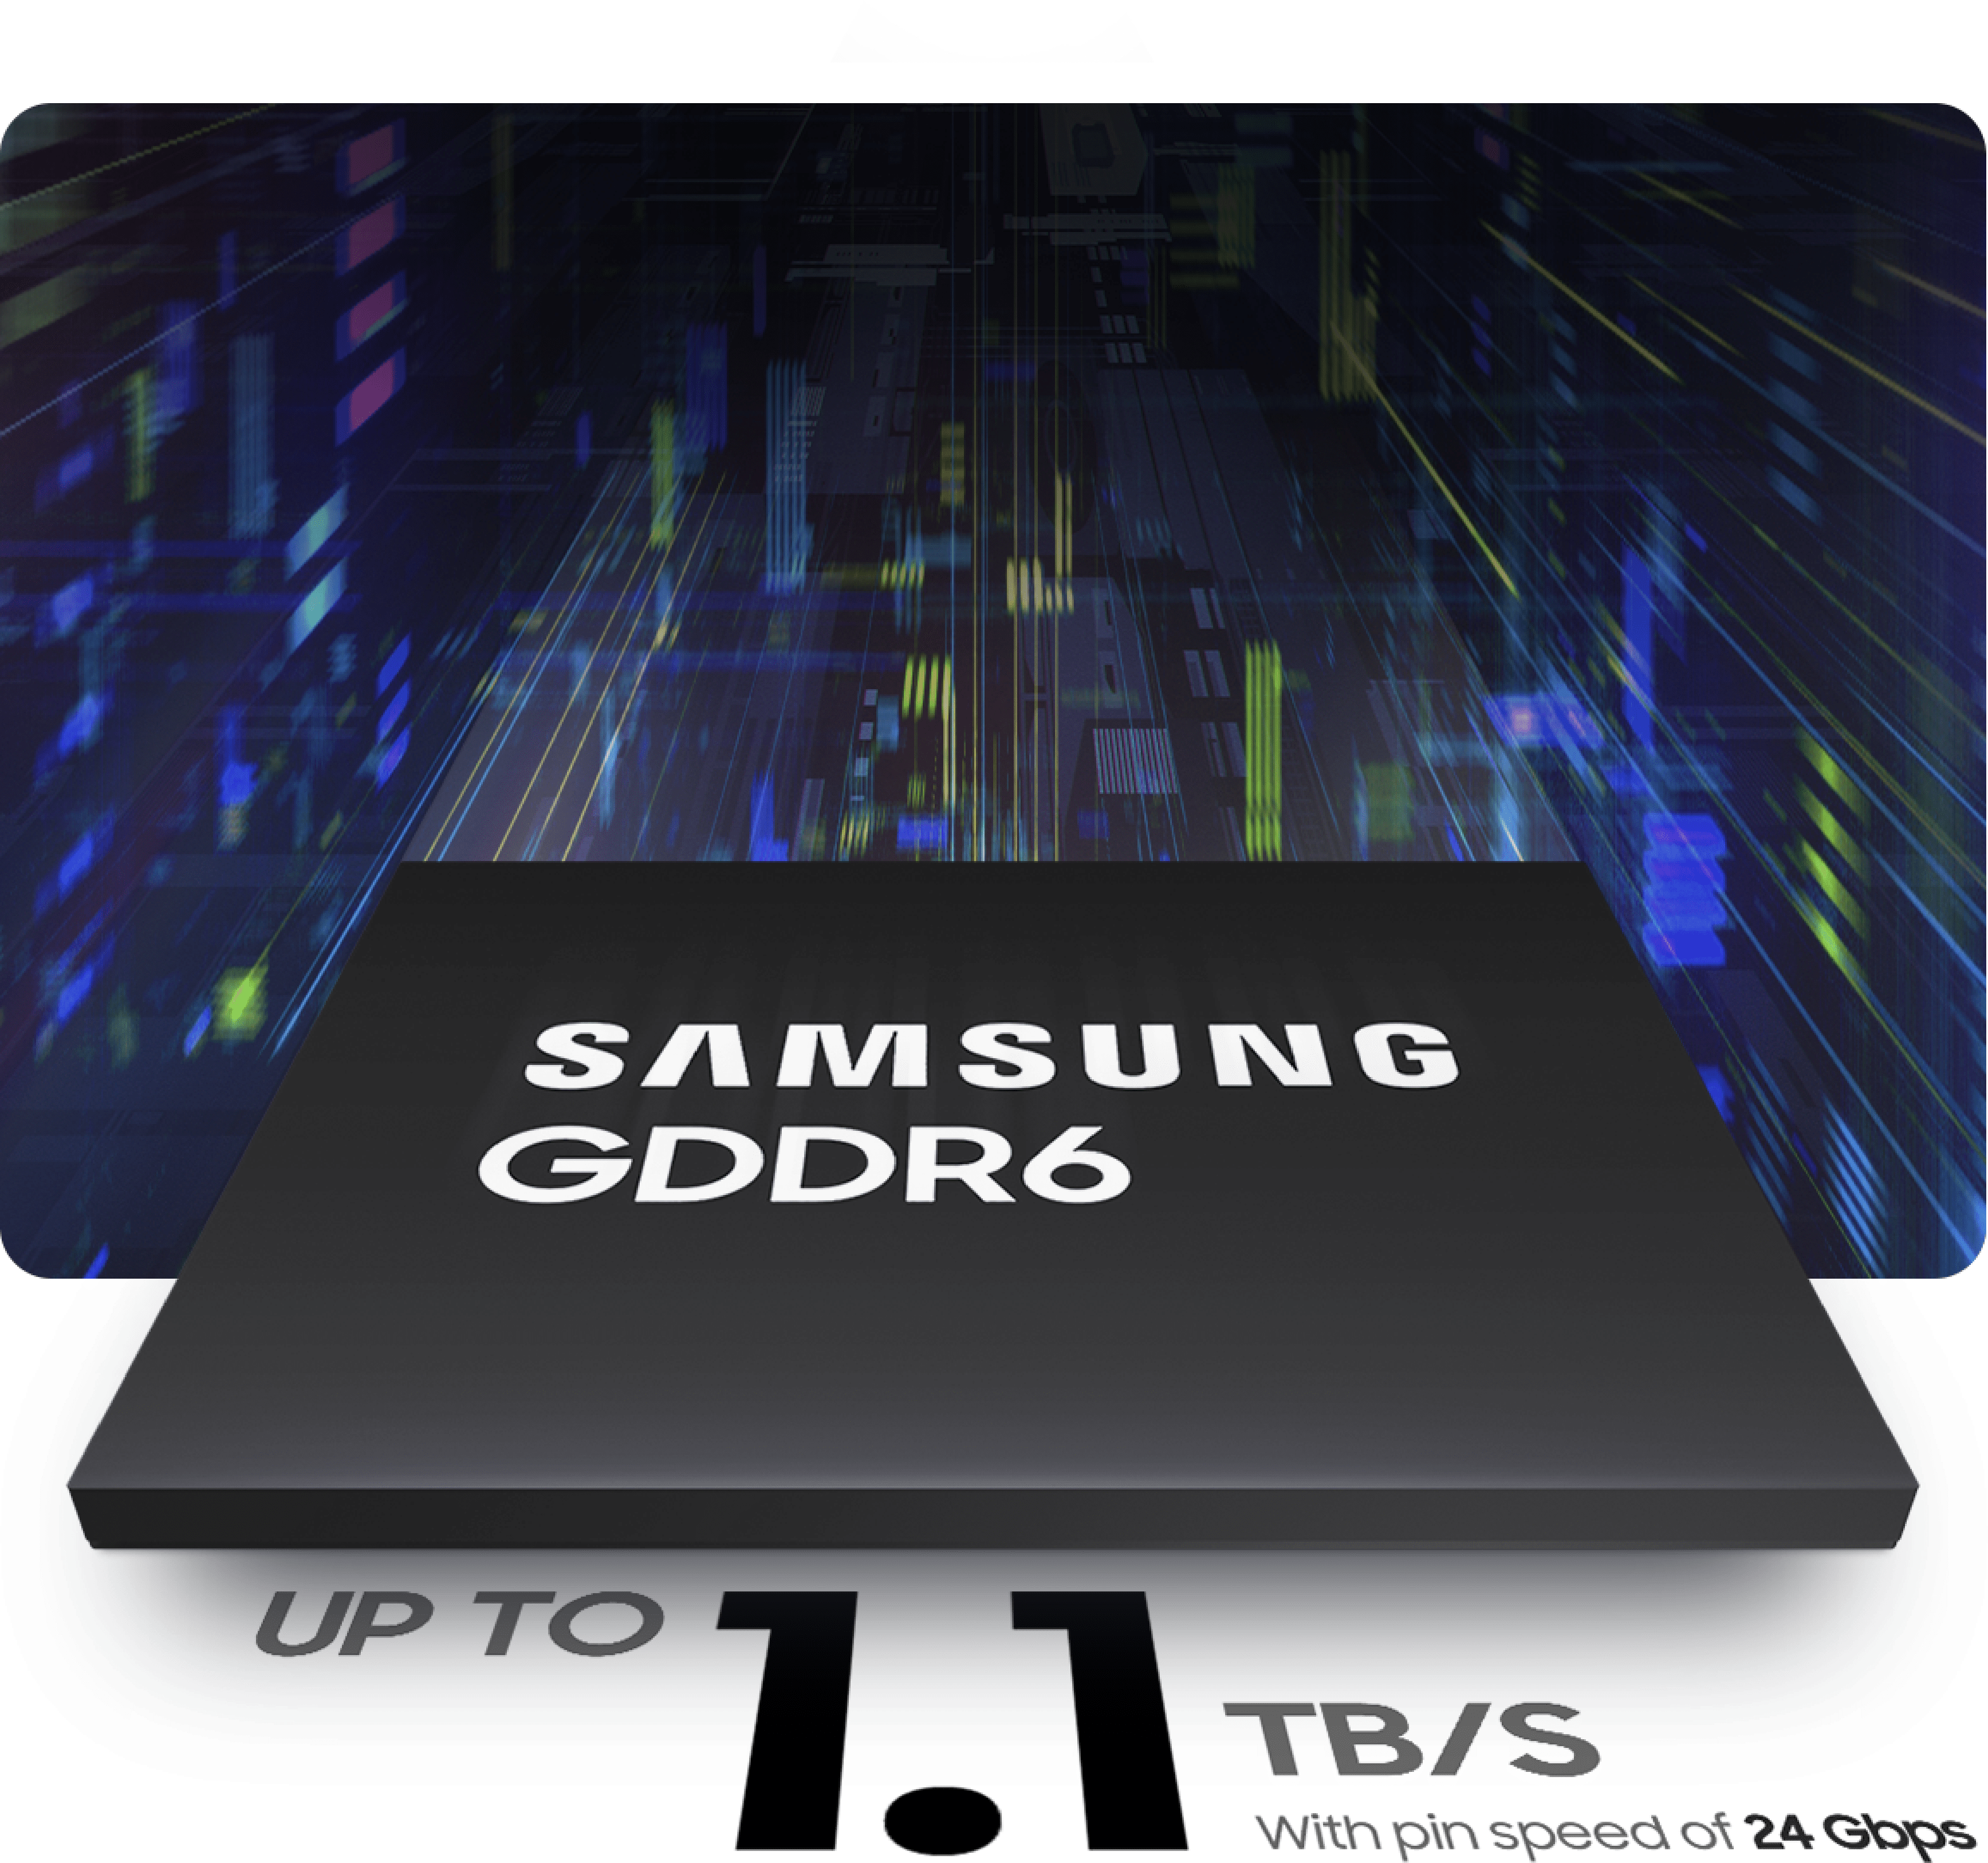 三星 GDDR6 的带宽高达 1.1 TB/s，速度高达 24 Gbps。